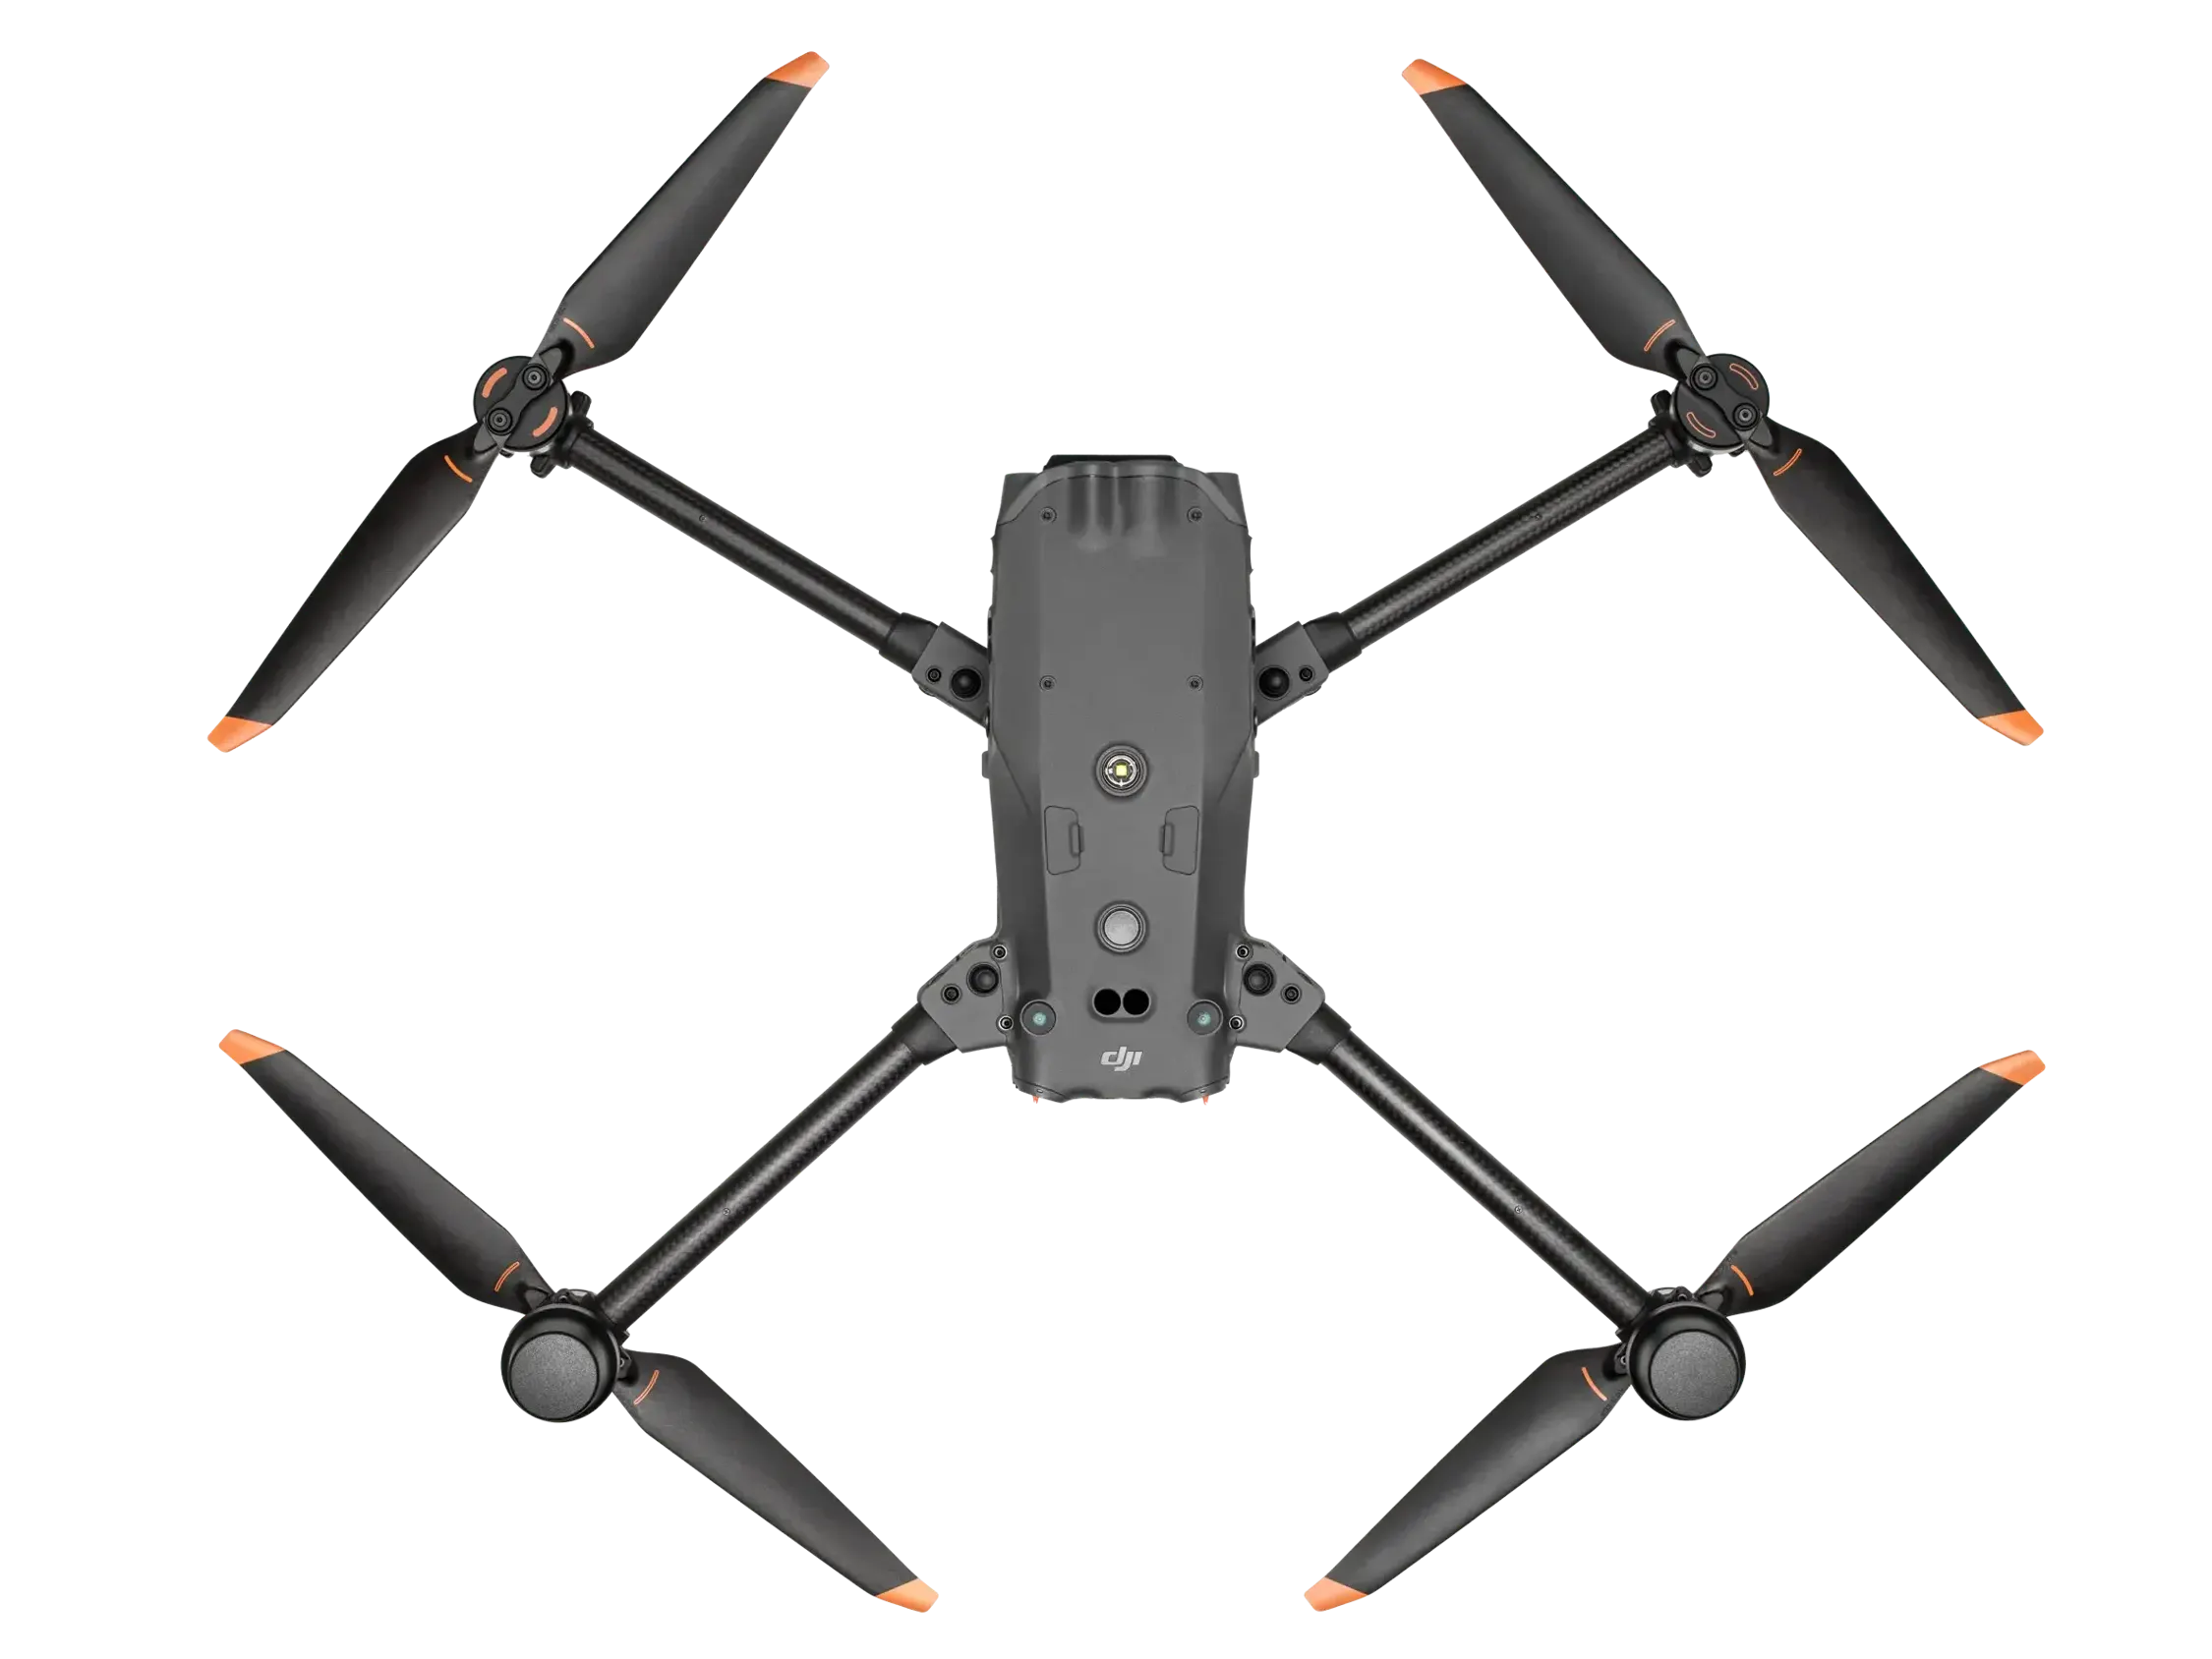 Drone Dji M30 Enterprise